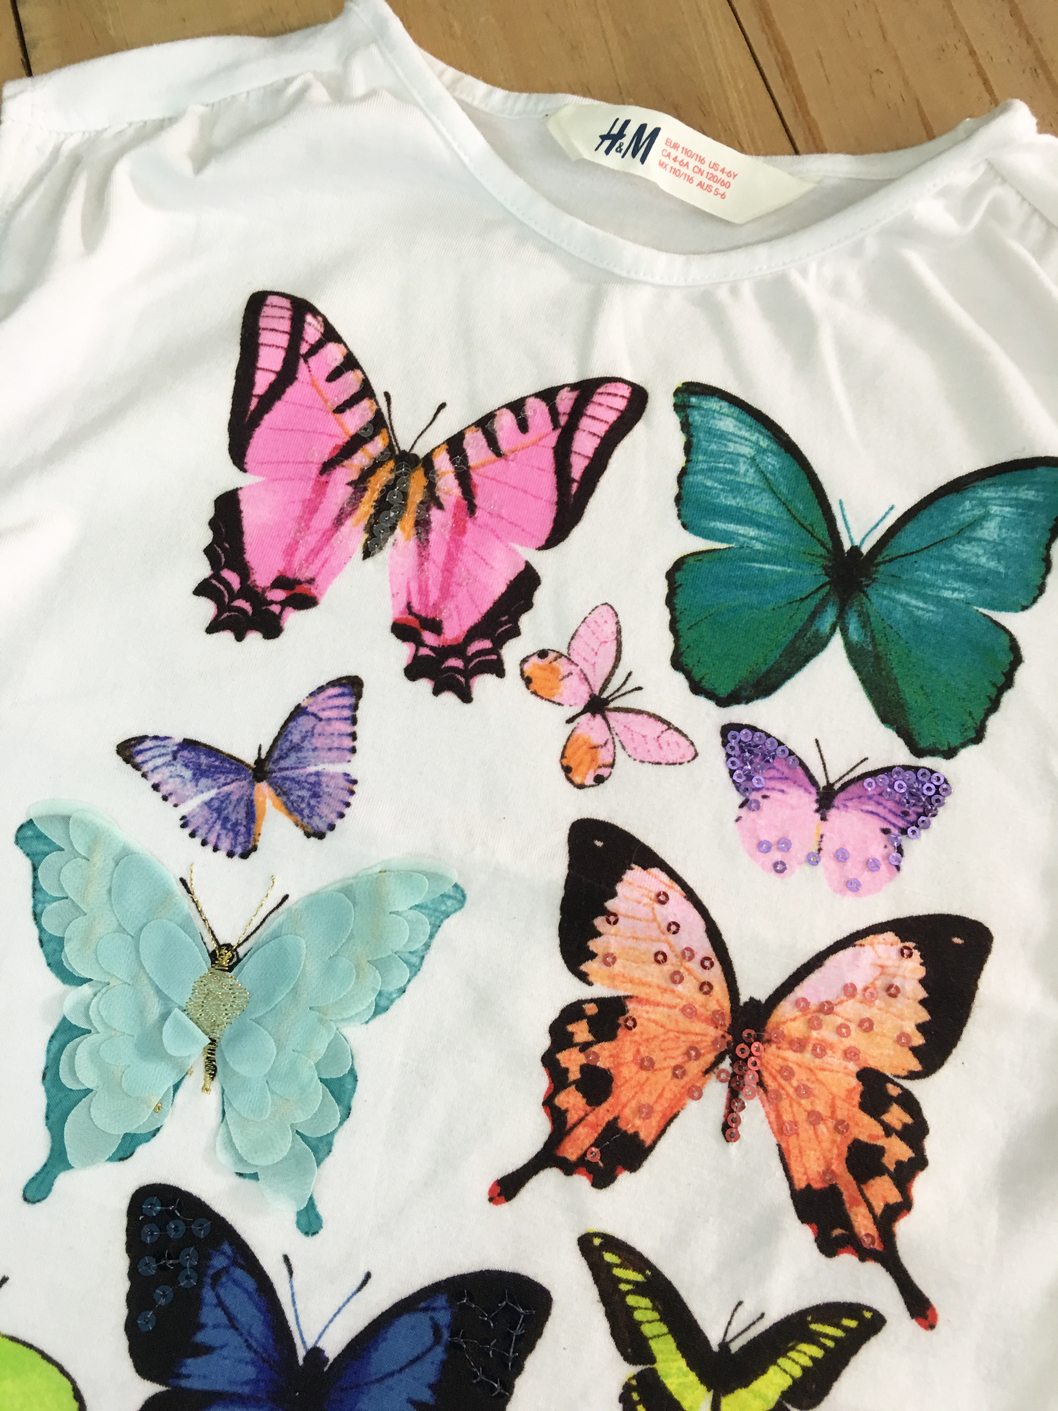 Áo thun bé gái, hiệu H&M, xuất xịn, made in cambodia, mẫu con bướm.